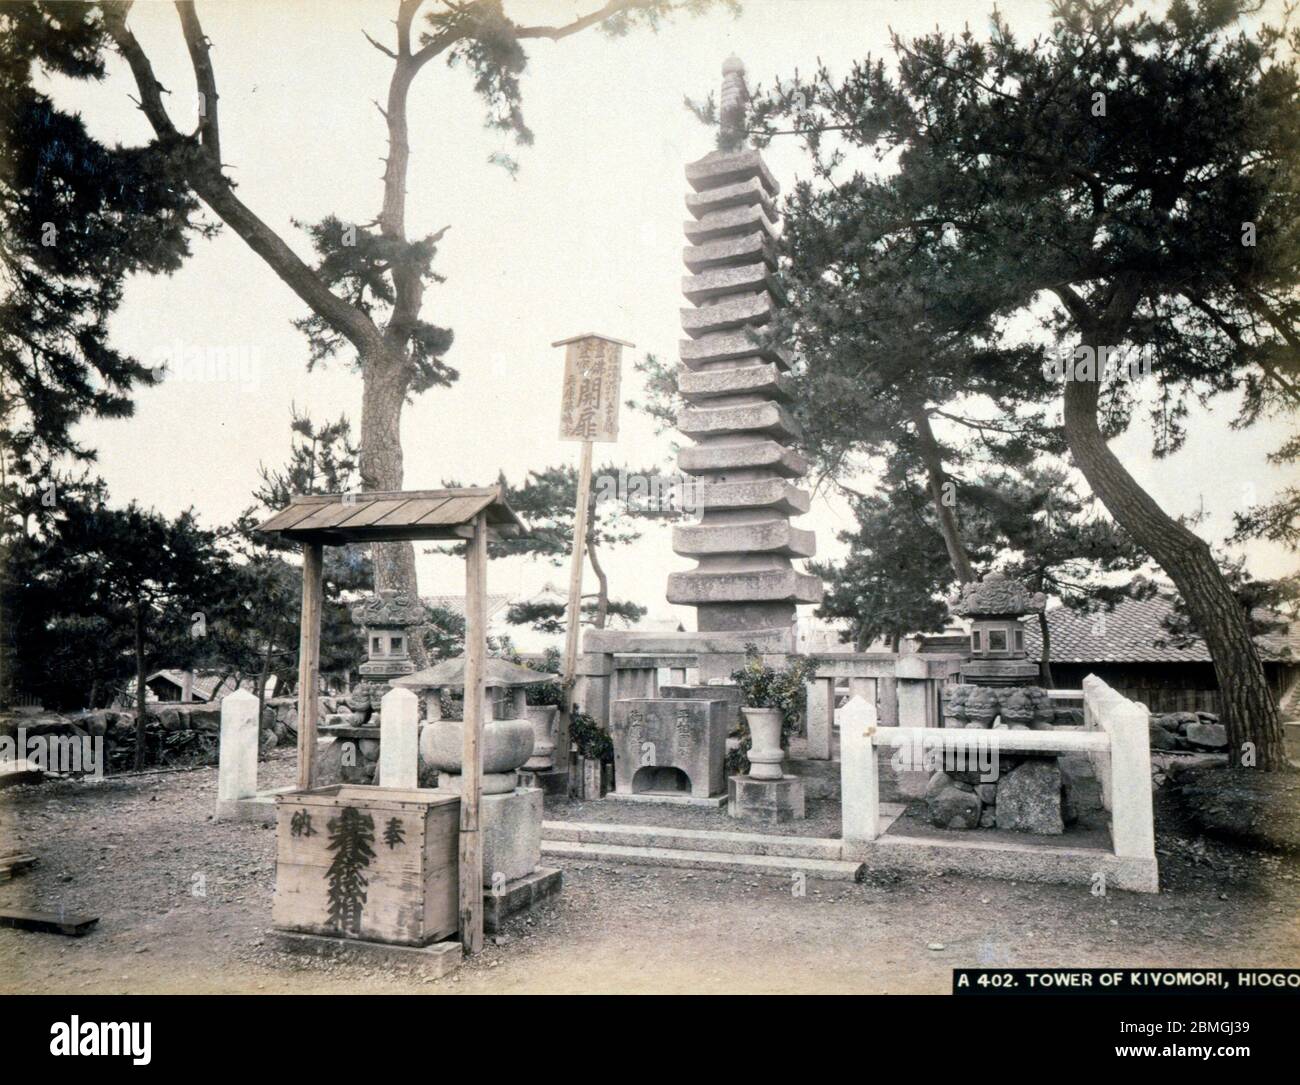 [ 1880 Japon - Mémorial de Taira no Kiyomori ] — Kiyomorizuka (清盛塚) est une pagode en pierre de 8.5 mètres de haut à Hyogo, Kobe. Construit en 1286, il commerce avec le Taira no Kiyomori (平清盛). Taira no Kiyomori était un général de la fin de la période Heian (794-1185) qui a établi le premier gouvernement administratif dominé par les samouraïs au Japon. Taira no Kiyomori est le personnage principal du Tale de Heike (平家物語, Heike Monogatari). photographie d'albumine vintage du xixe siècle. Banque D'Images